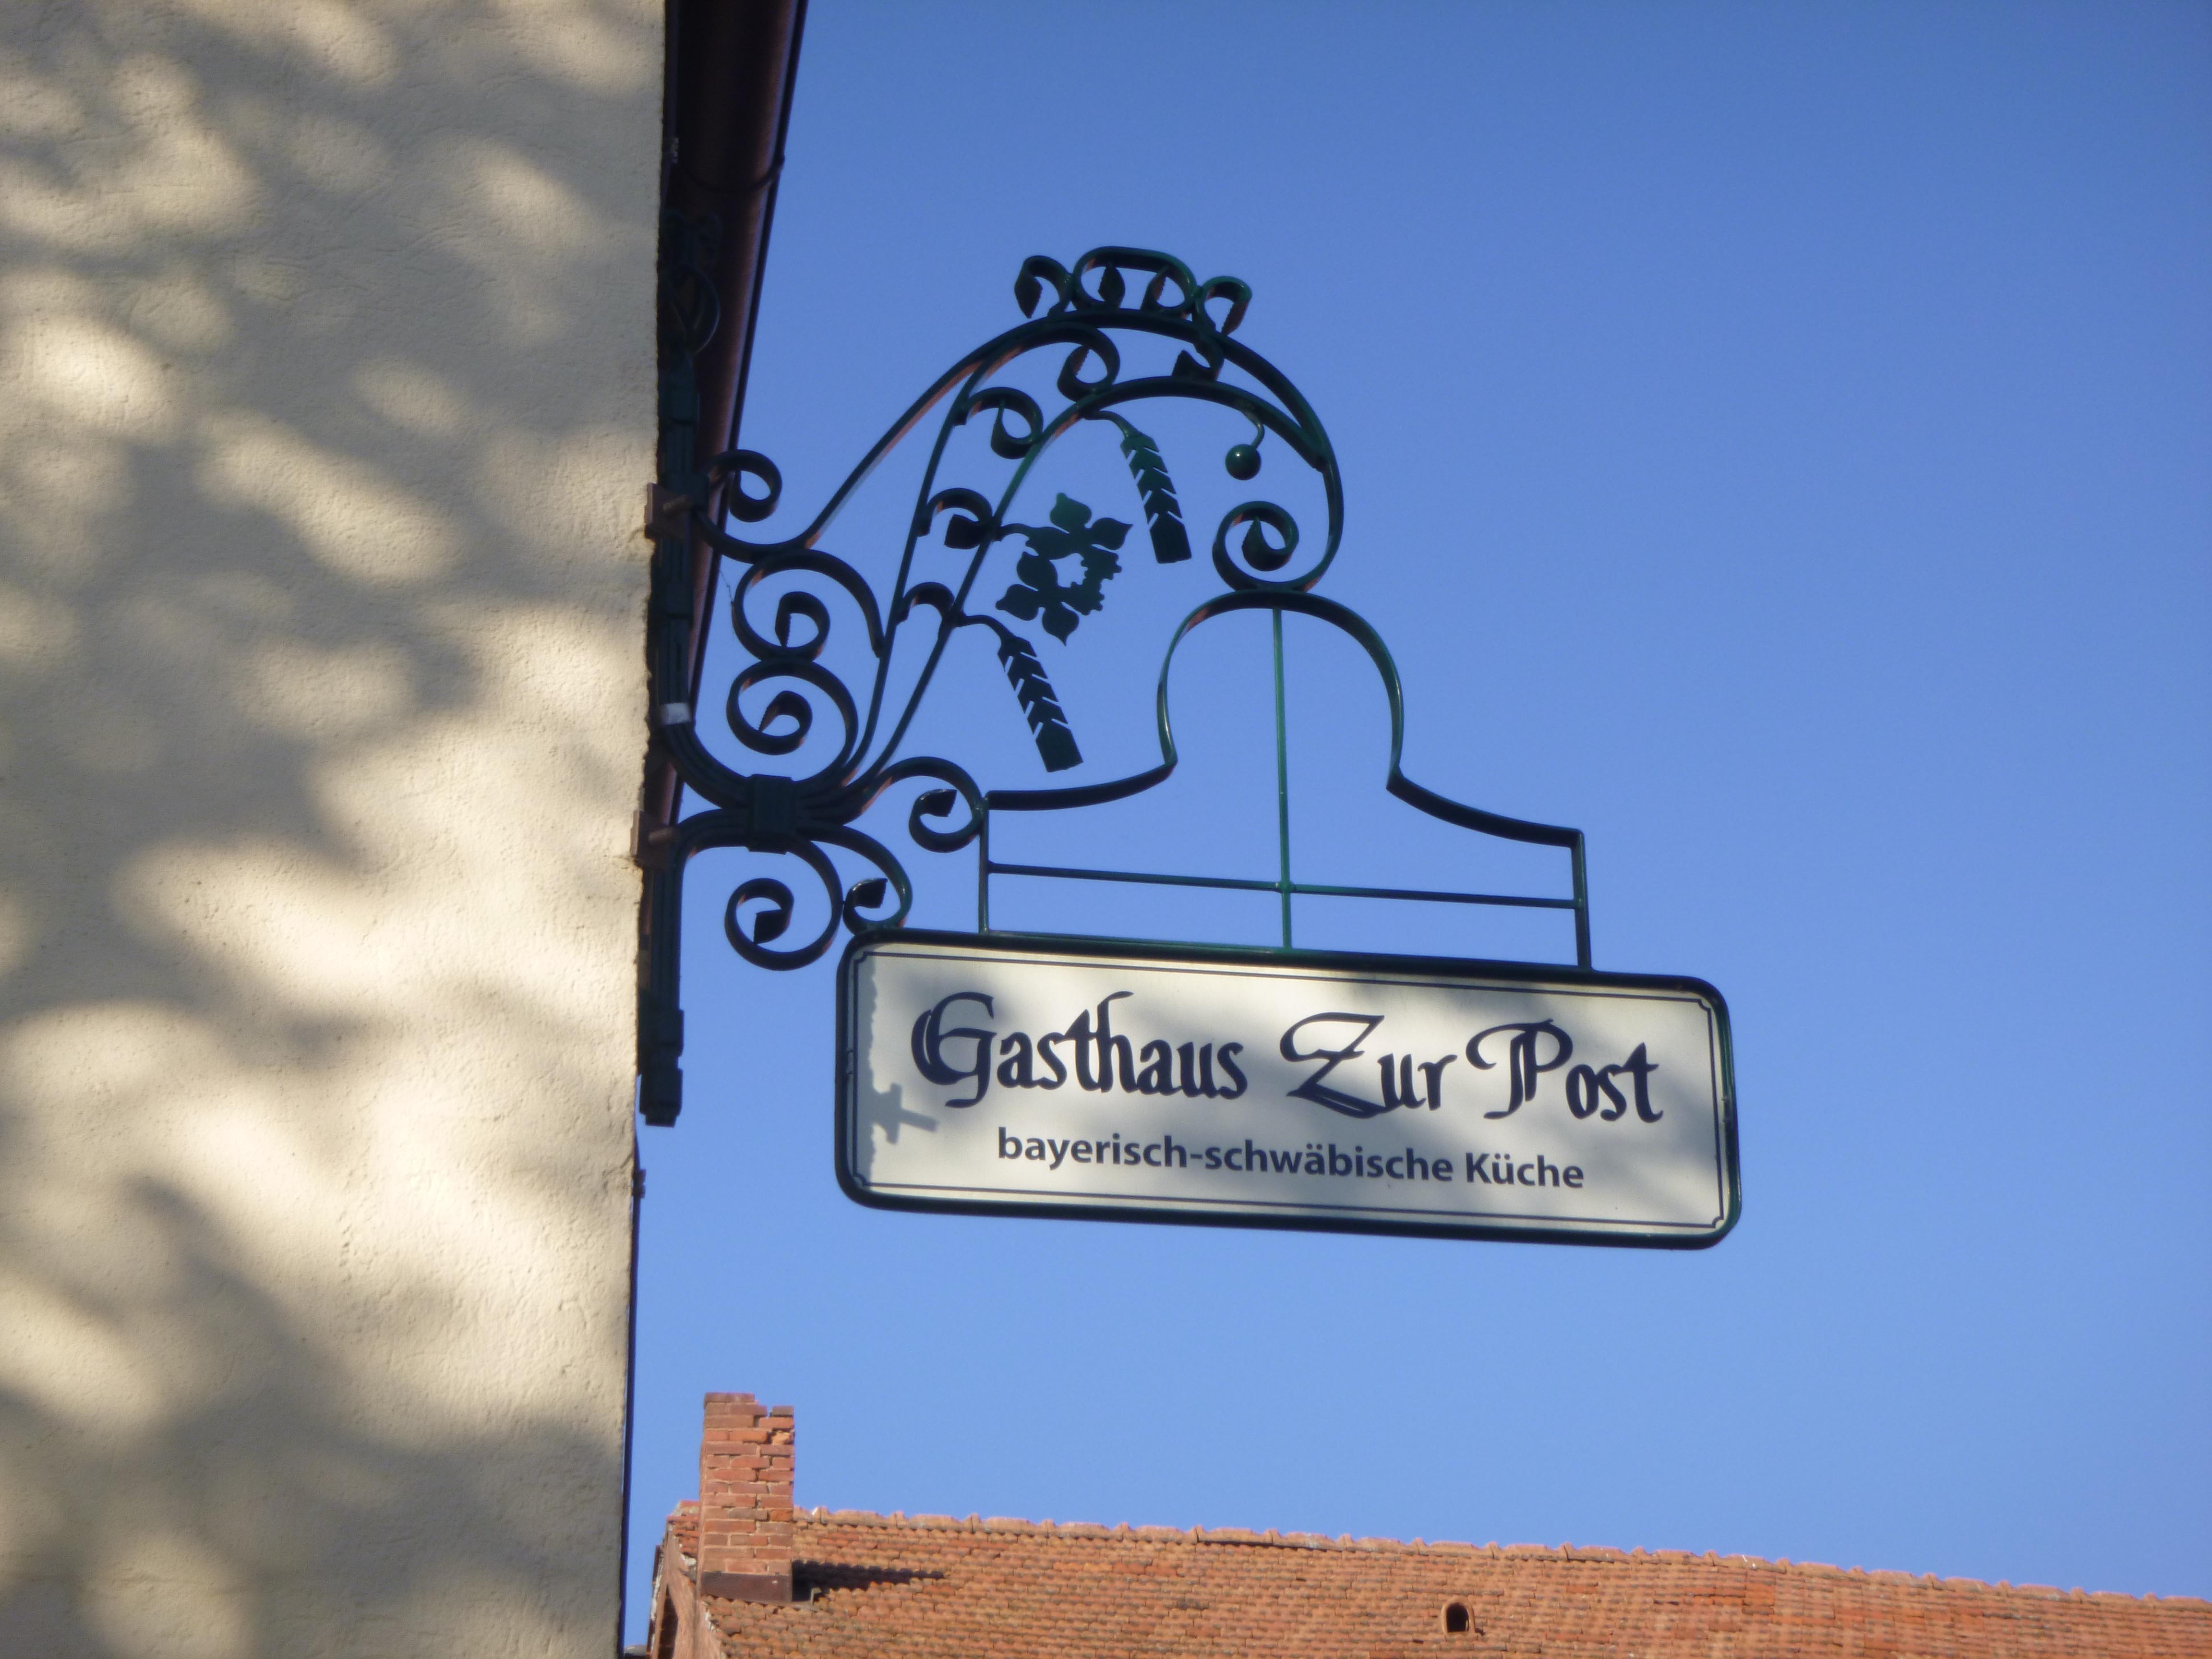 (c) Gasthaus-zur-post.com